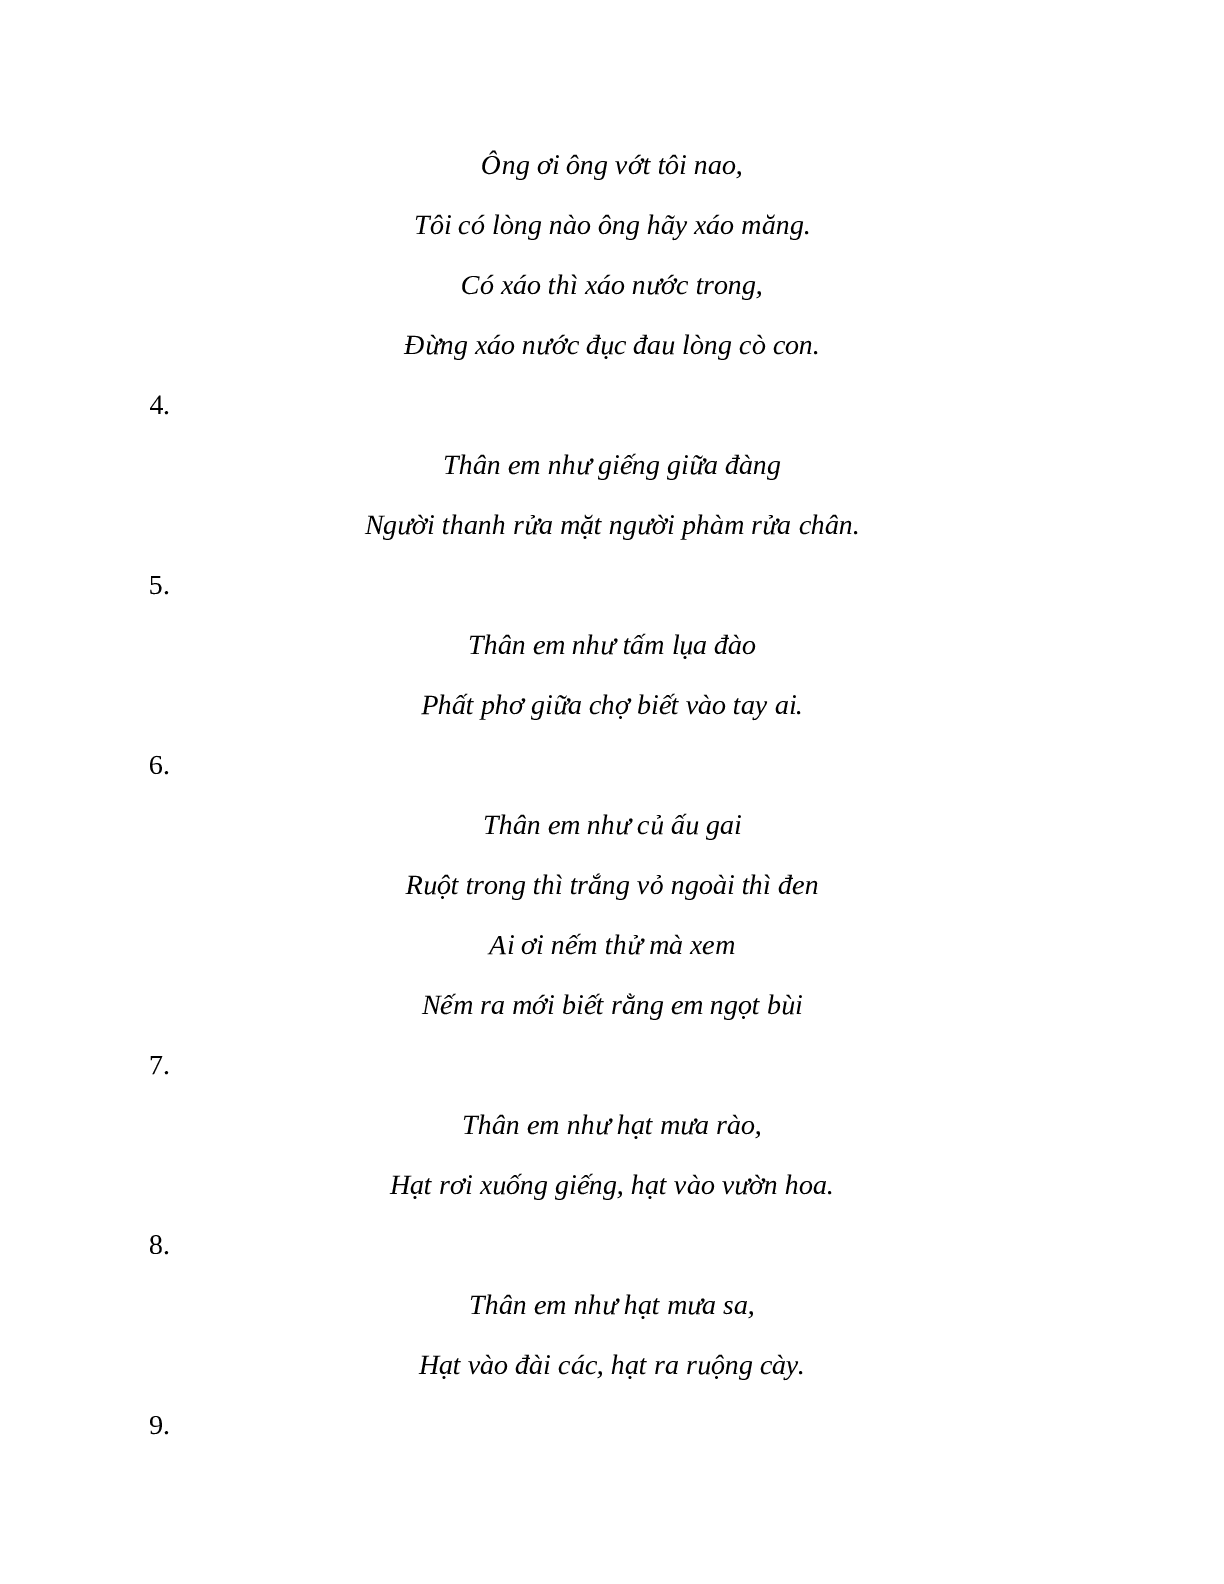 Sơ đồ tư duy bài Những câu hát than thân dễ nhớ, ngắn nhất - Ngữ văn lớp 7 (trang 8)